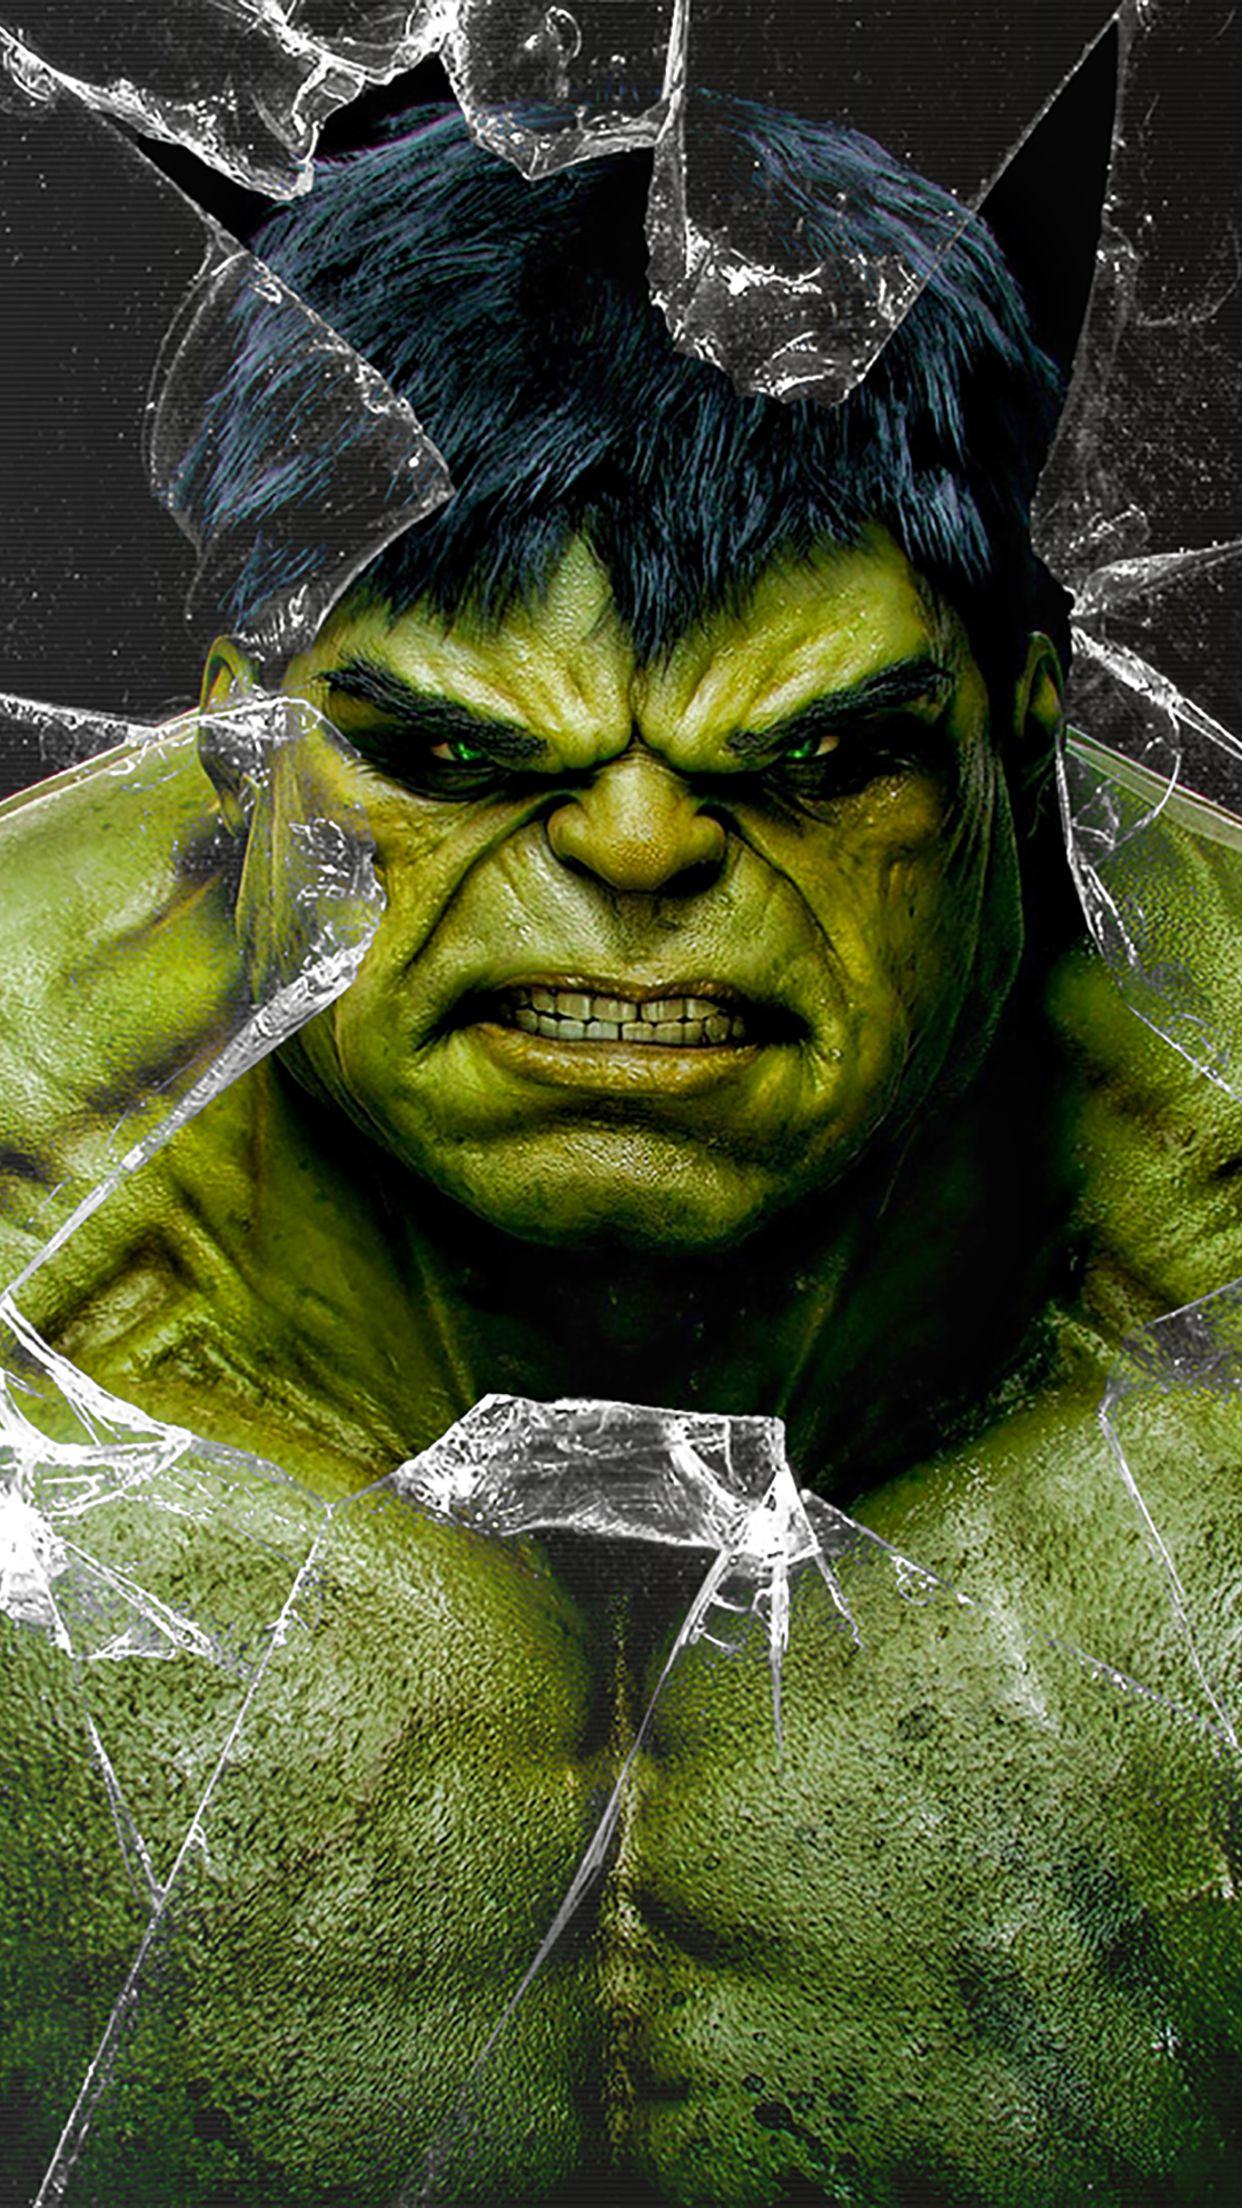 Hulk broken glass Wallpaper for iPhone X, 6